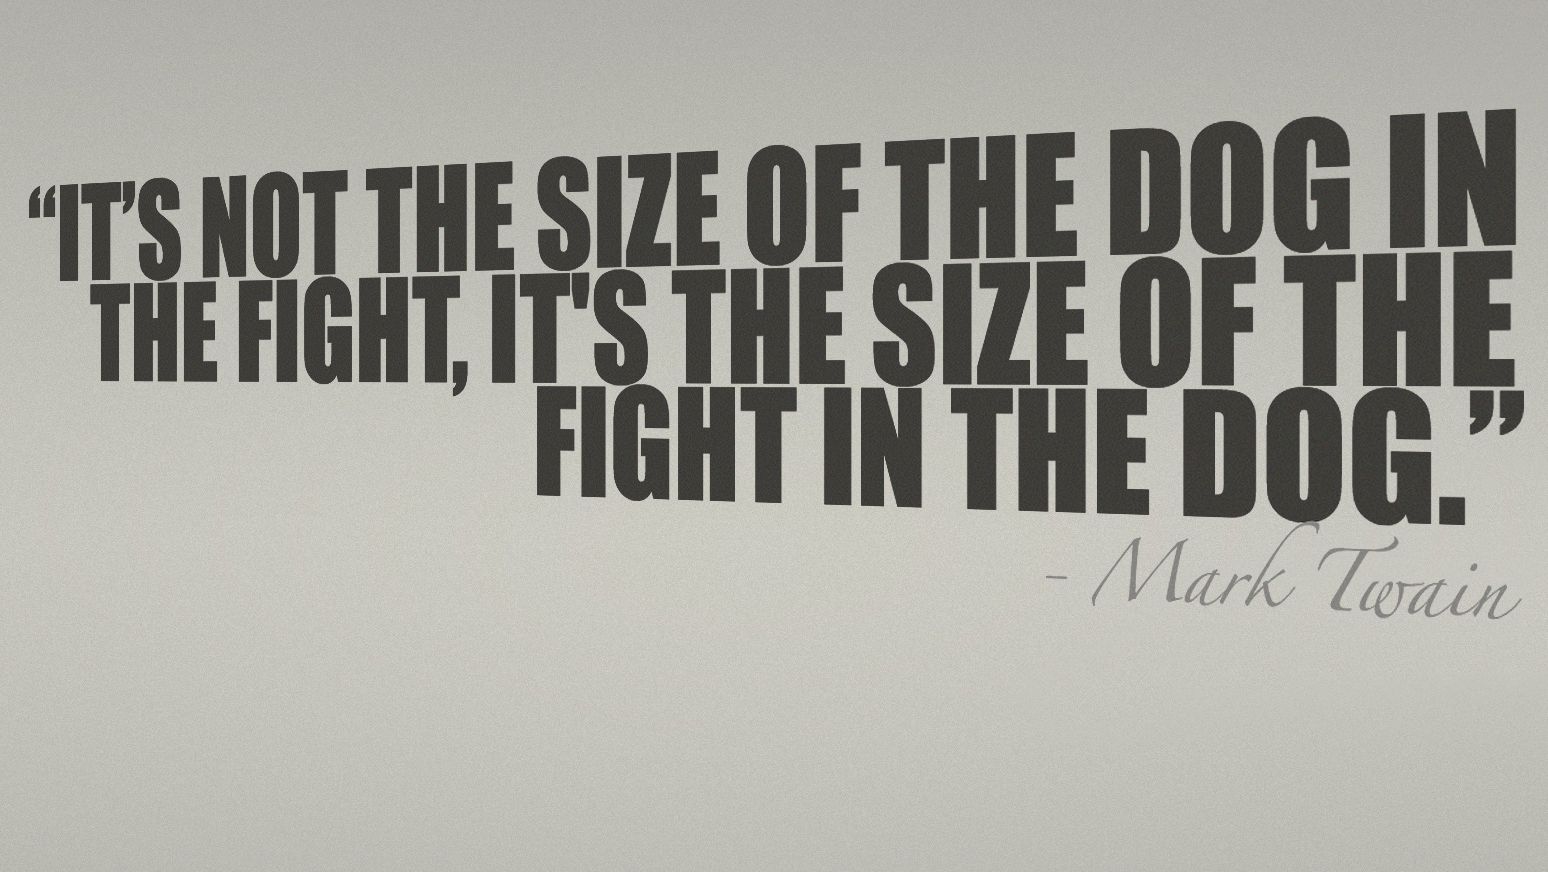 It's not the size of the dog in the fight, it's the size of the fight in the dog. Mark Twain